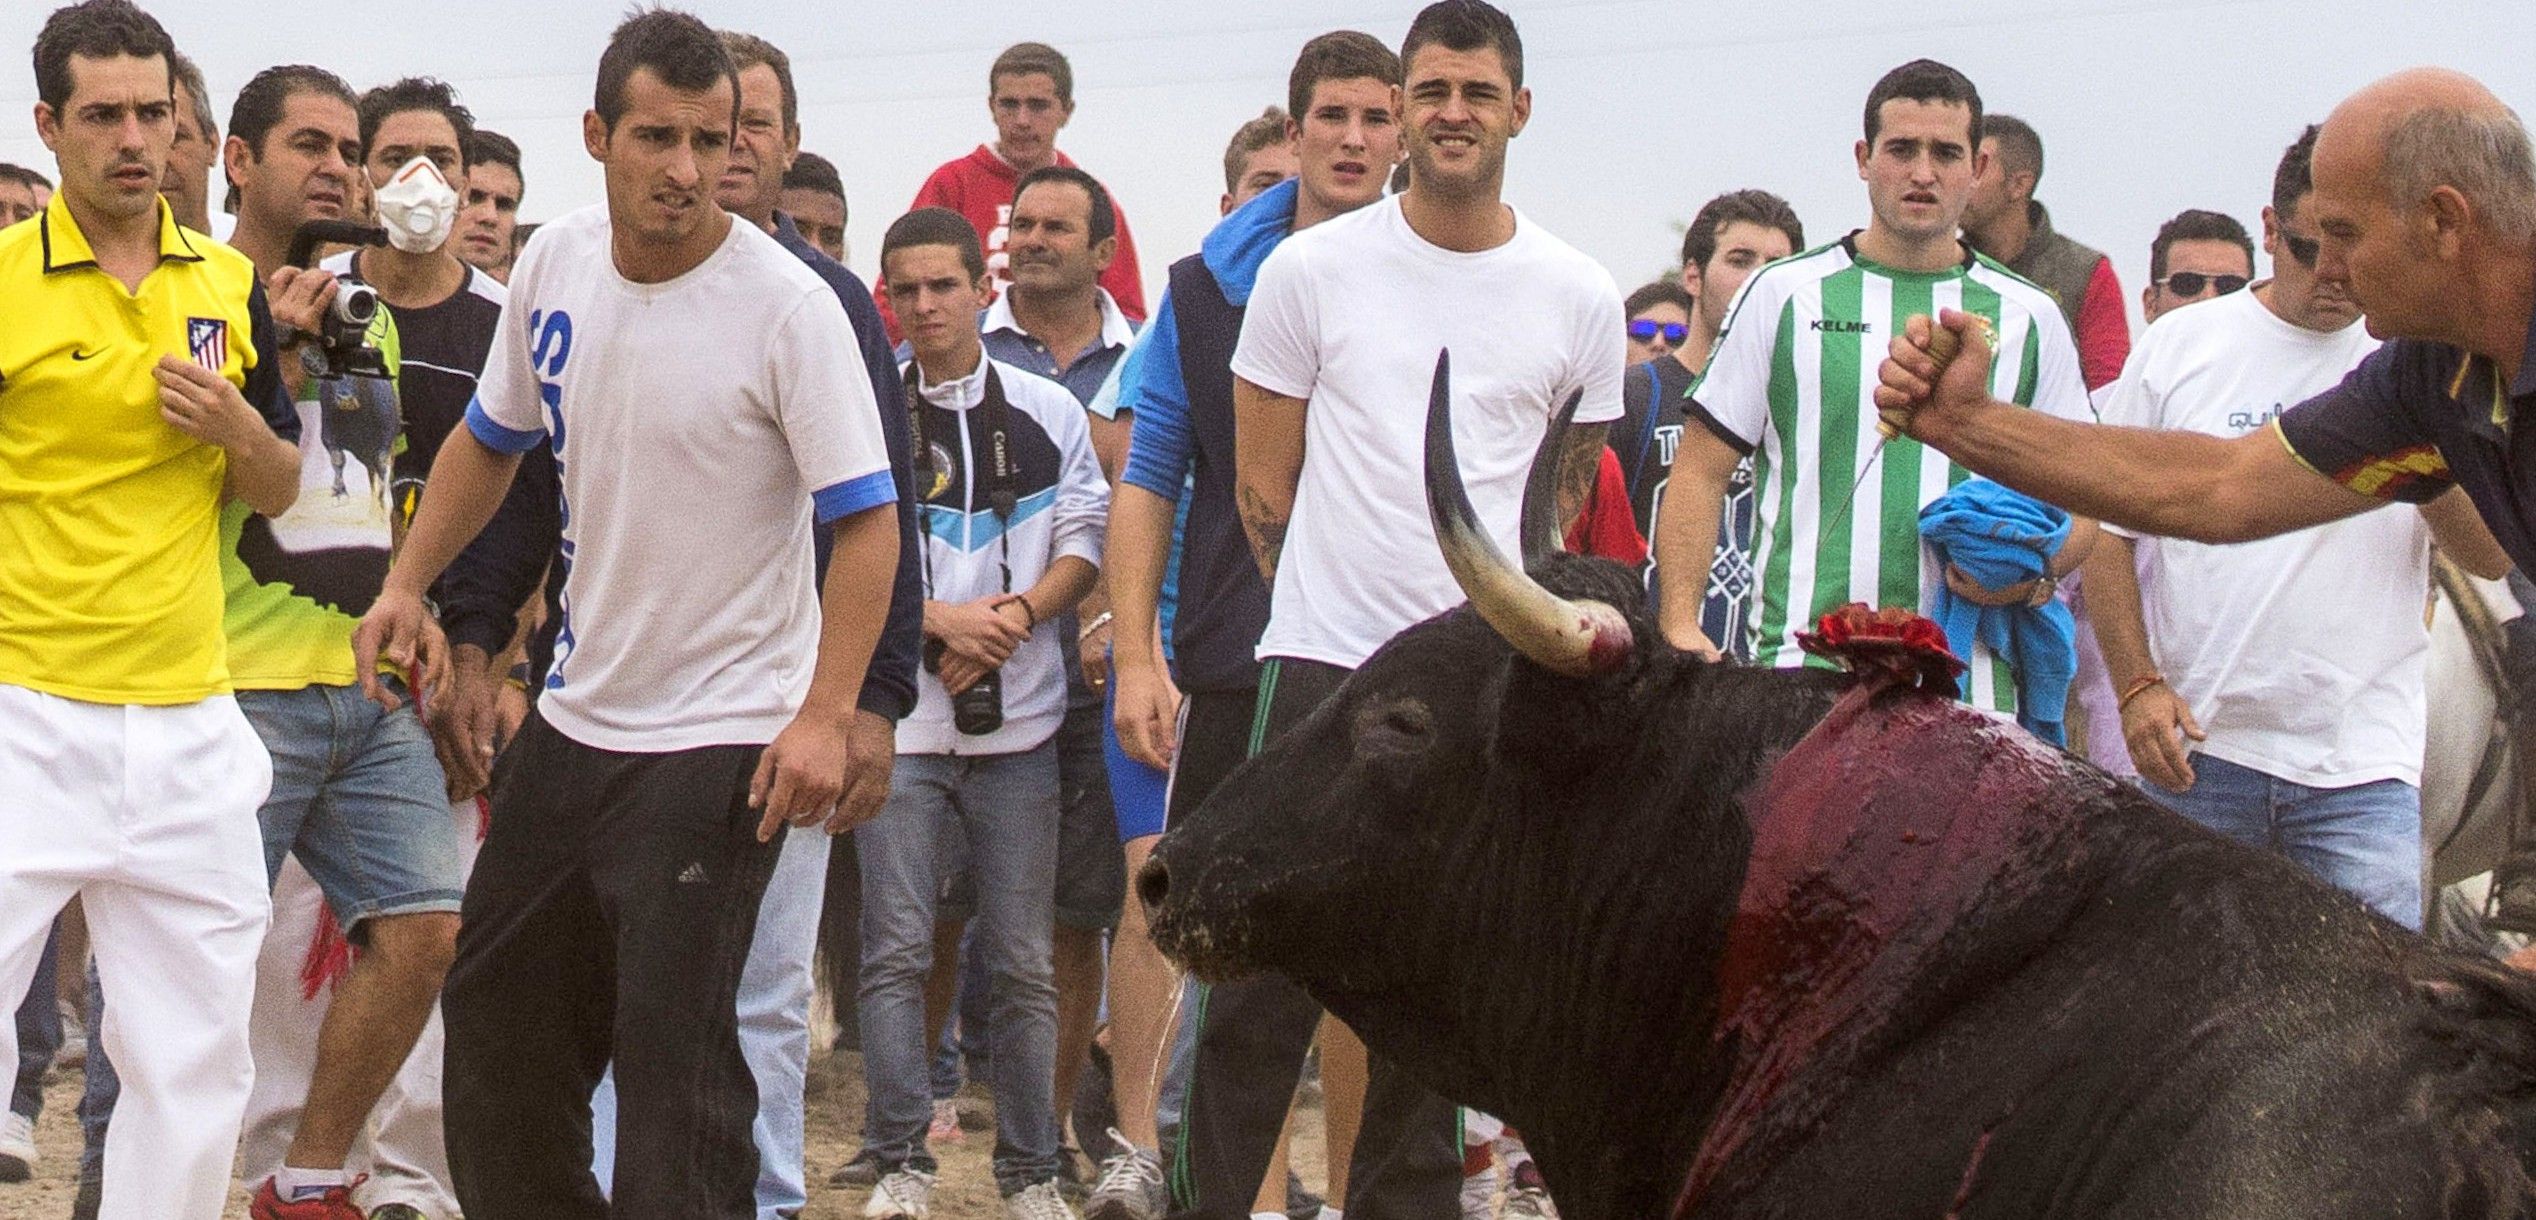 Momentos finales de 'Elegido', el toro sacrificado en la edición de 2014 / Foto: Wikipedia